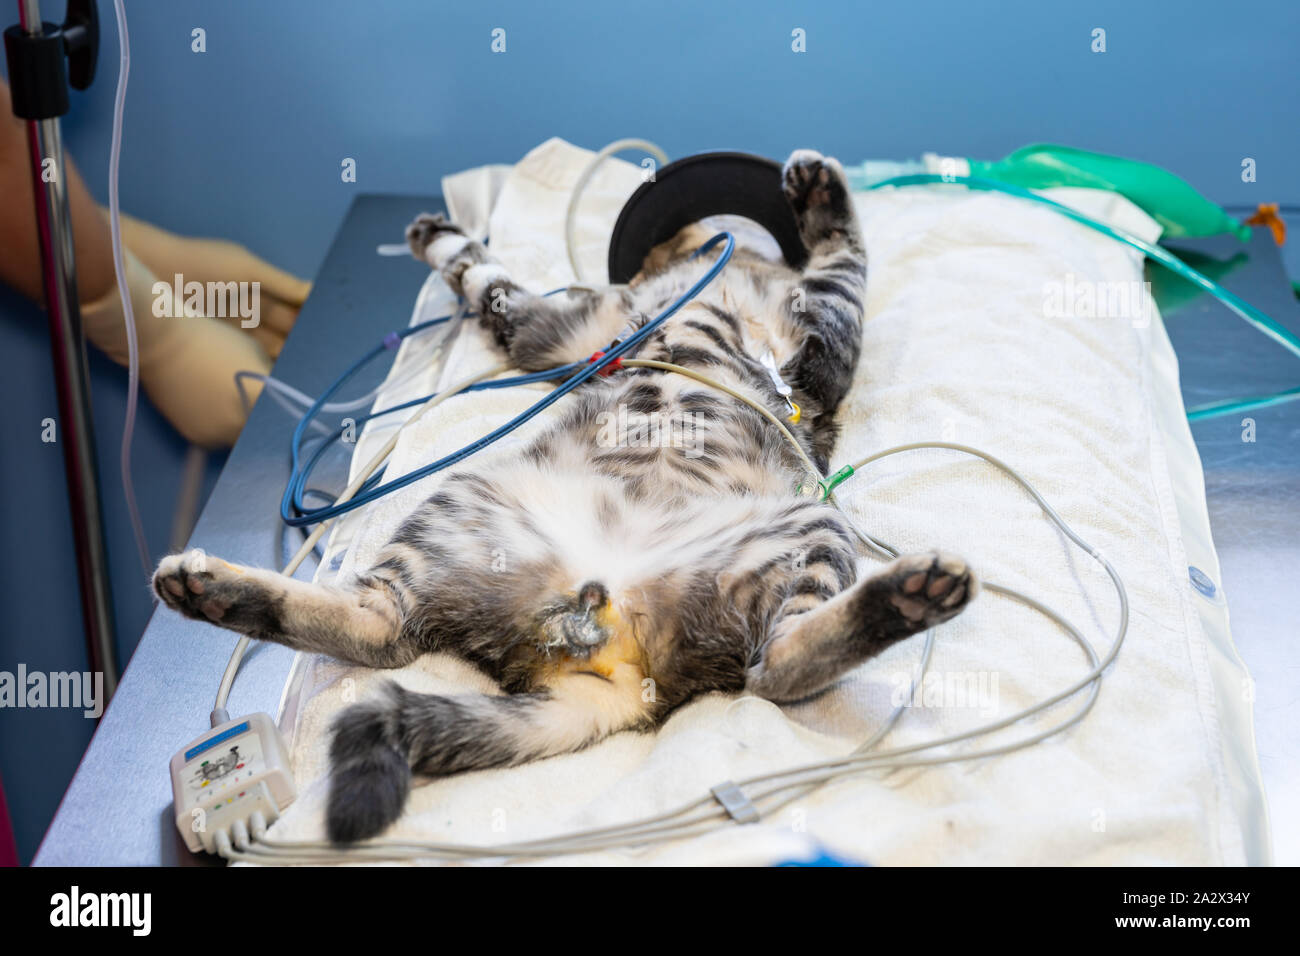 Ekg-Elektrode entfernen von einem Tierarzt, der auf einer Sedierten Katze mit Sauerstoff Maske Stockfoto